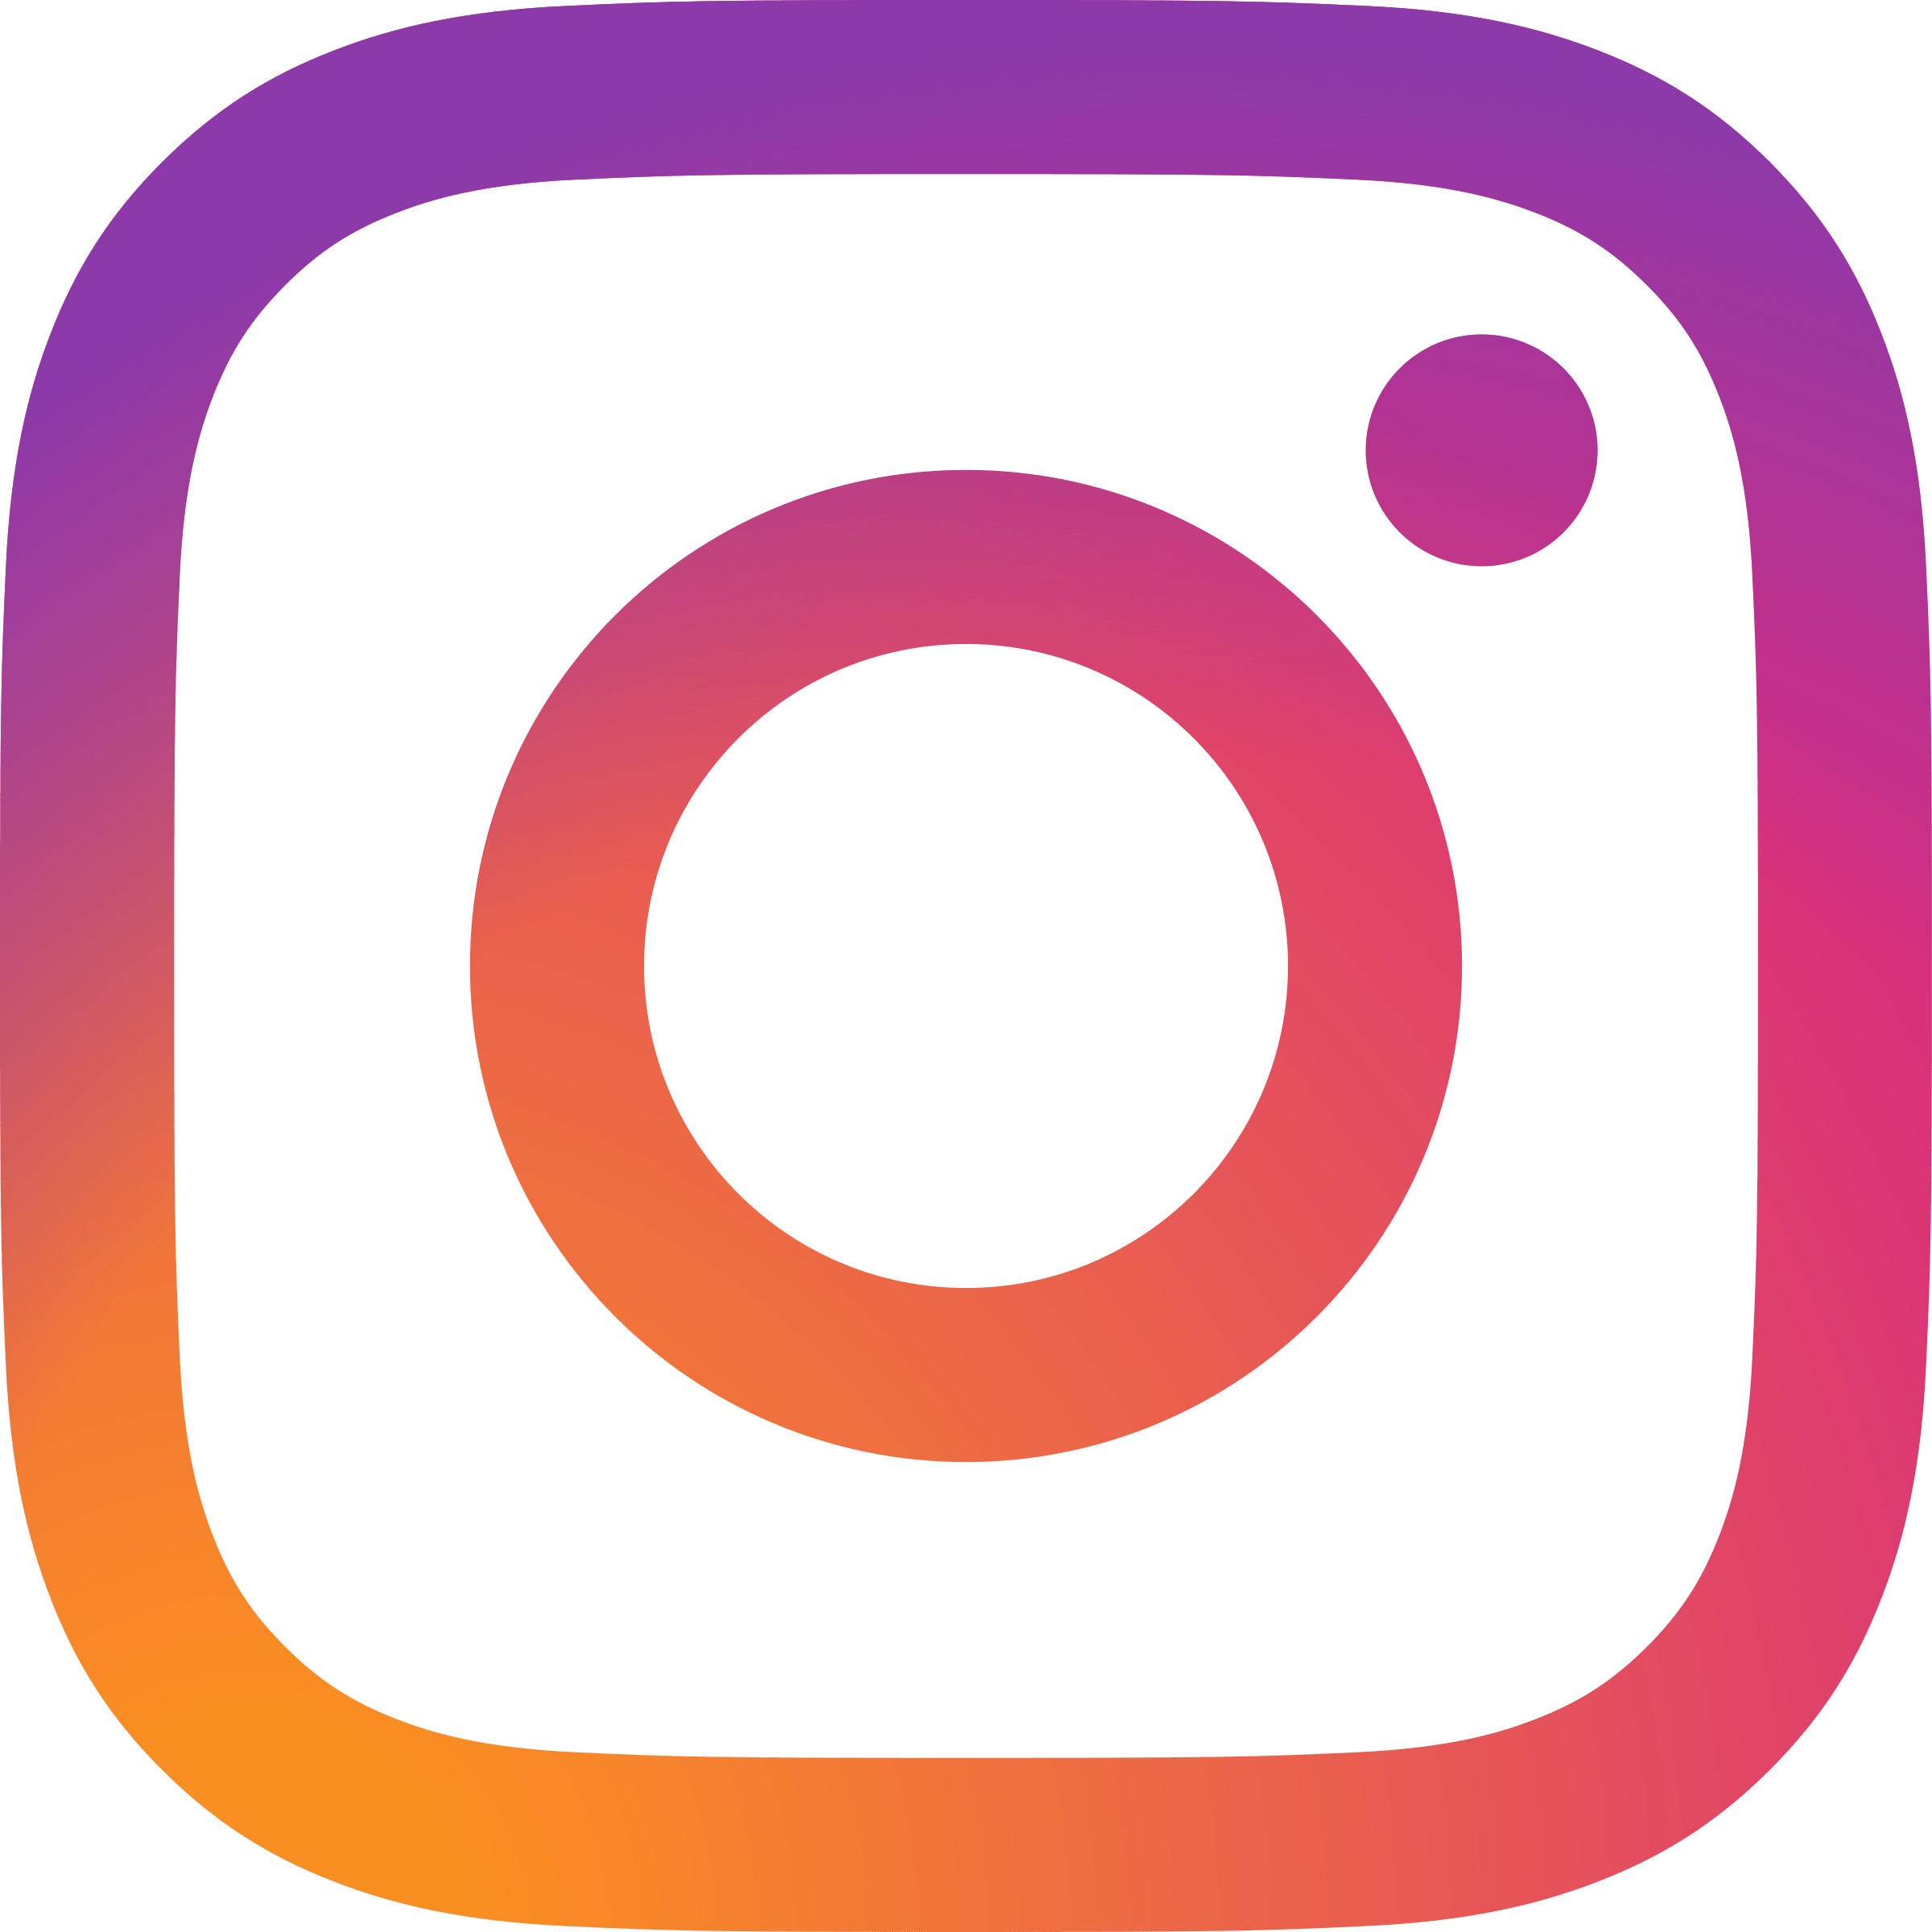 Large Instagram Logo - Instagram 2016 Logo SVG Vector & PNG Transparent - Vector Logo Supply